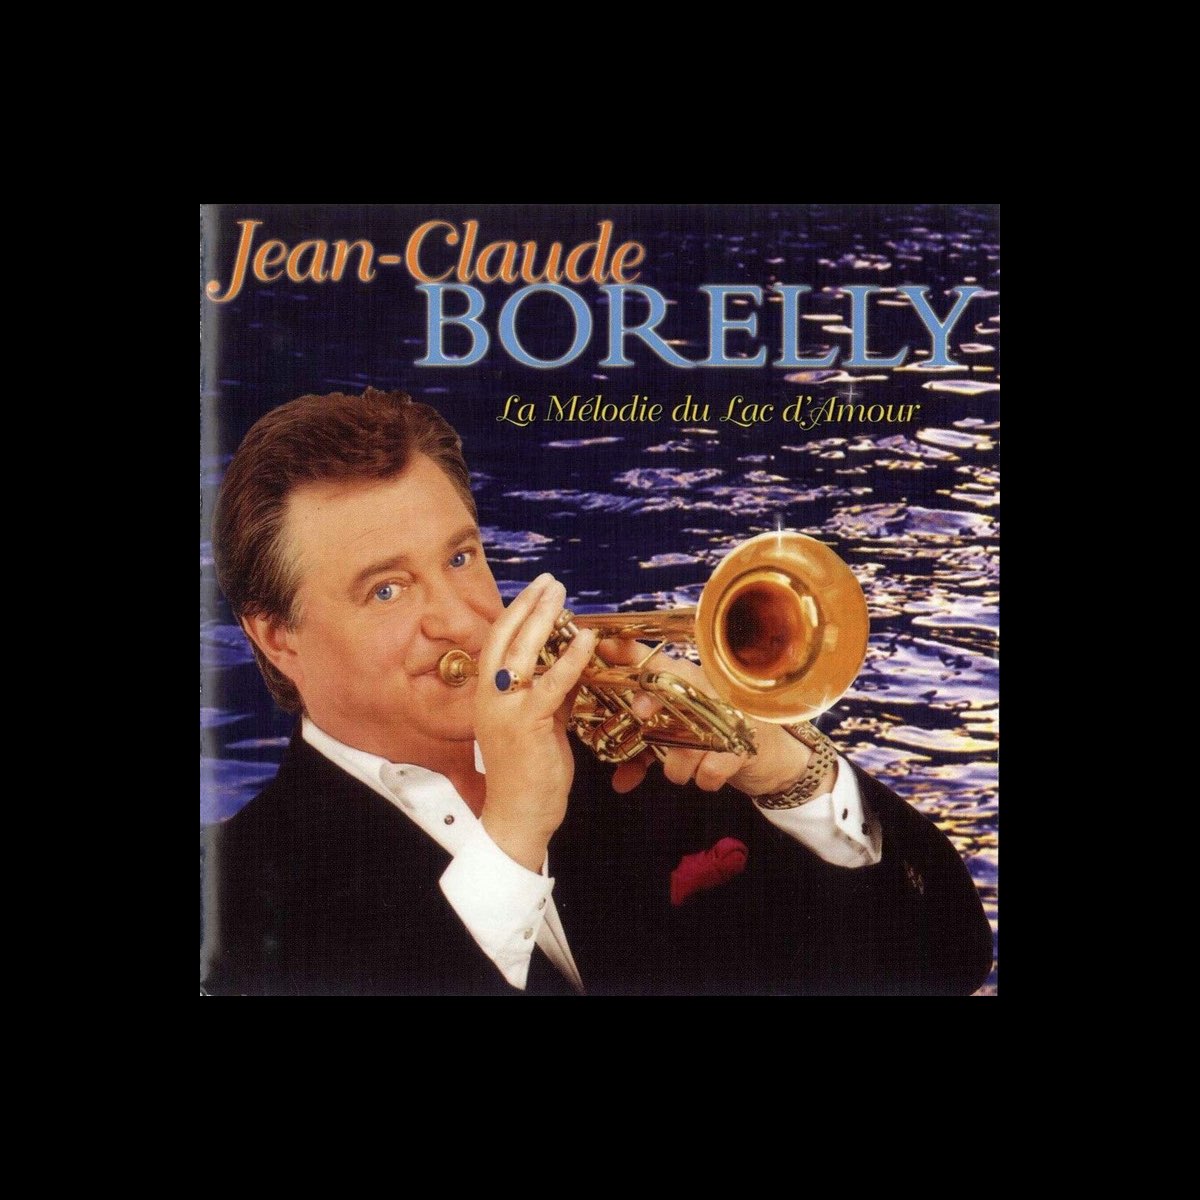 La mélodie du lac d'amour – Album par Jean Claude Borelly – Apple Music